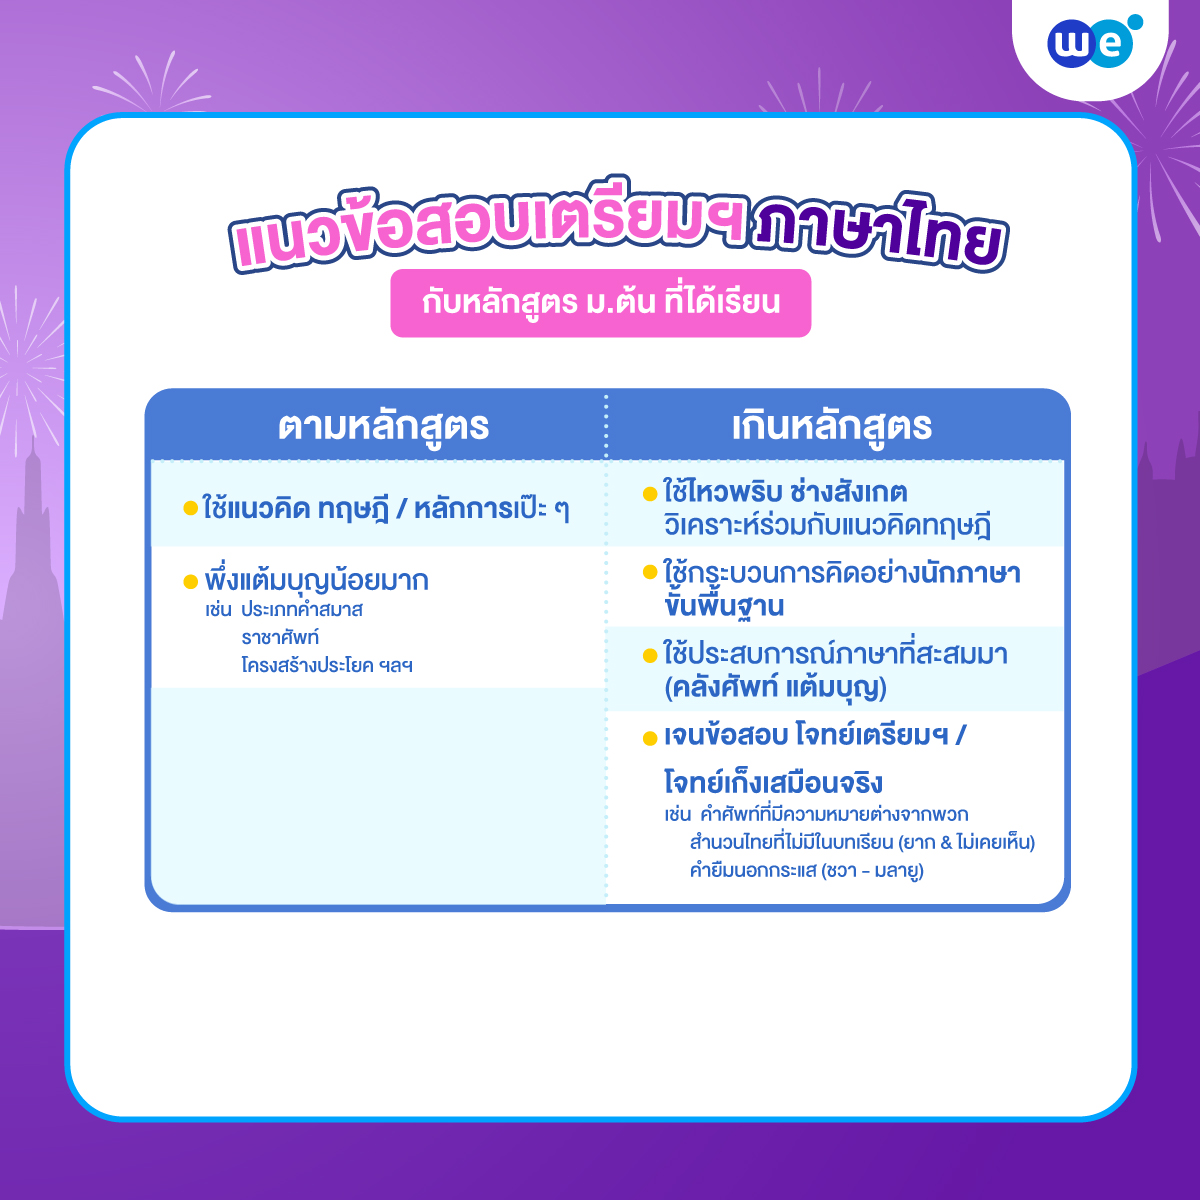 แนวข้อสอบภาษาไทย สอบเข้า ม.4 เตรียมอุดมฯ กับหลักสูตร ม.ต้น ตามหลักสูตร vs เกินหลักสูตร